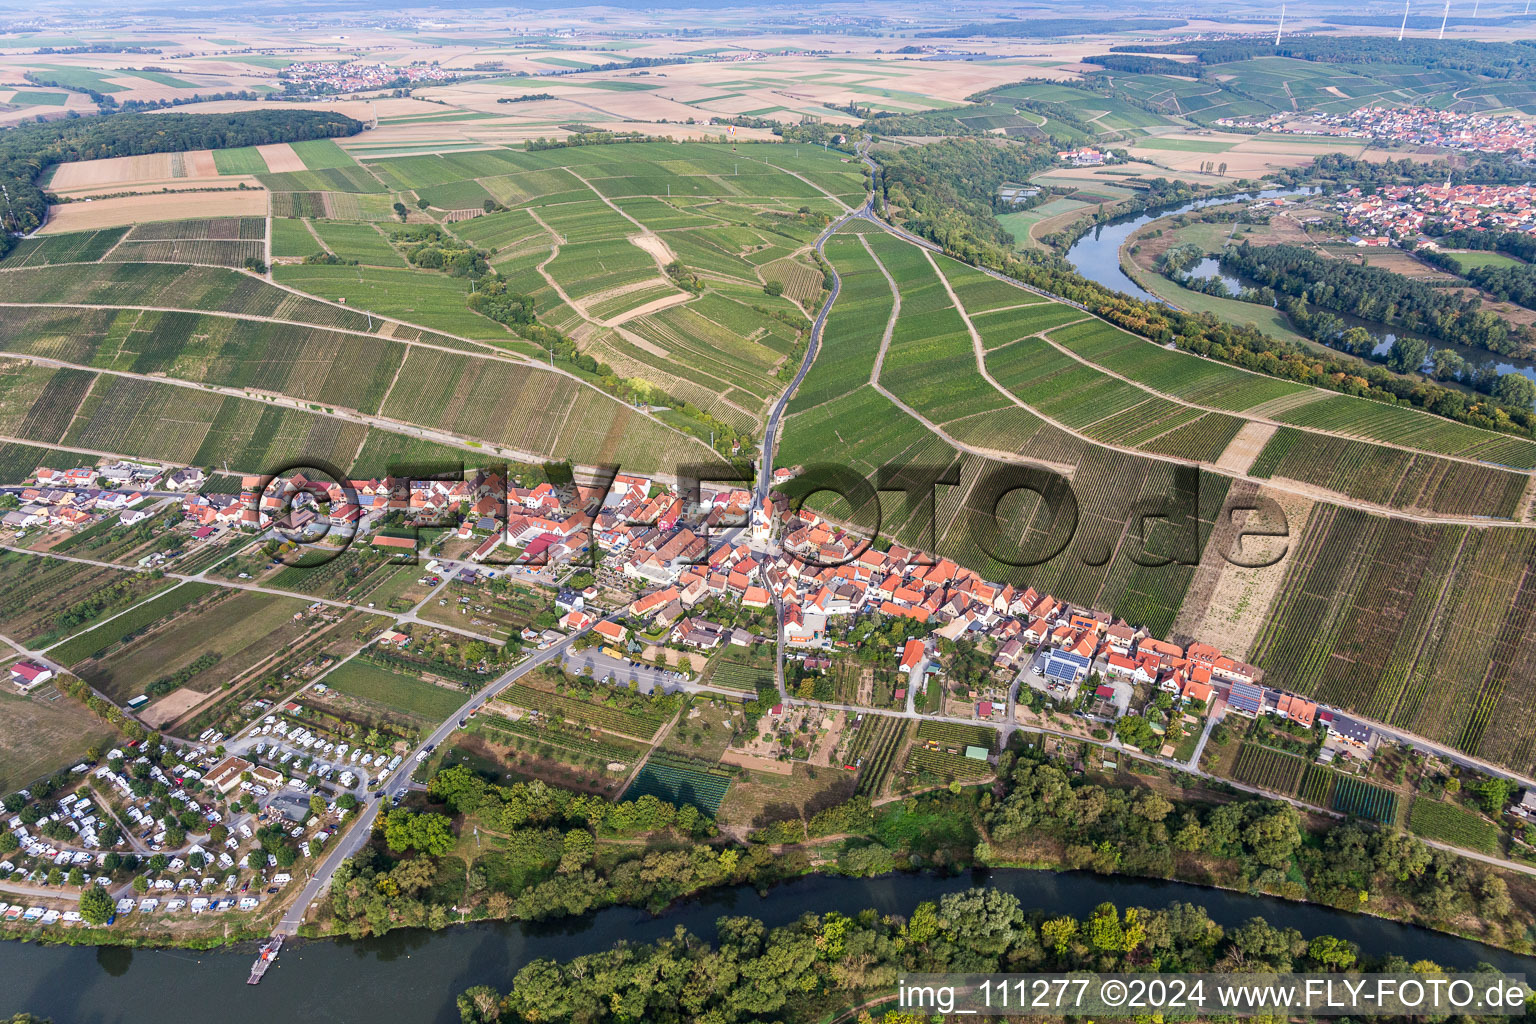 Luftbild von Escherndorf an der Mainschleife von Nordheim im Bundesland Bayern, Deutschland